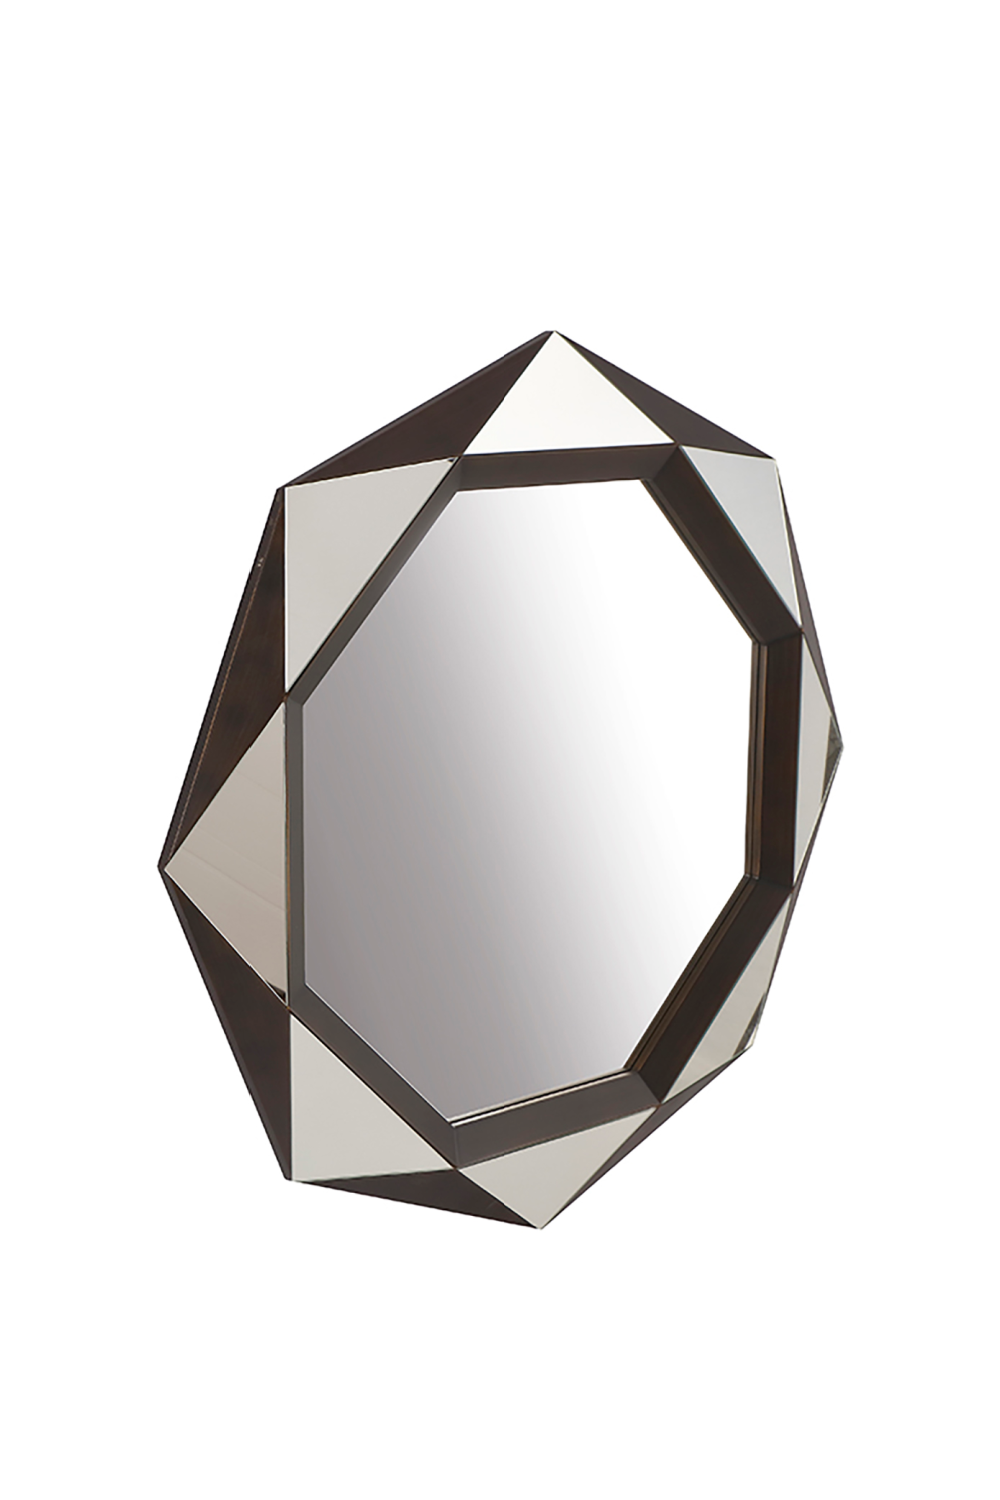 Octagonal Modern Mirror | Liang & Eimil Lieber | OROA.com